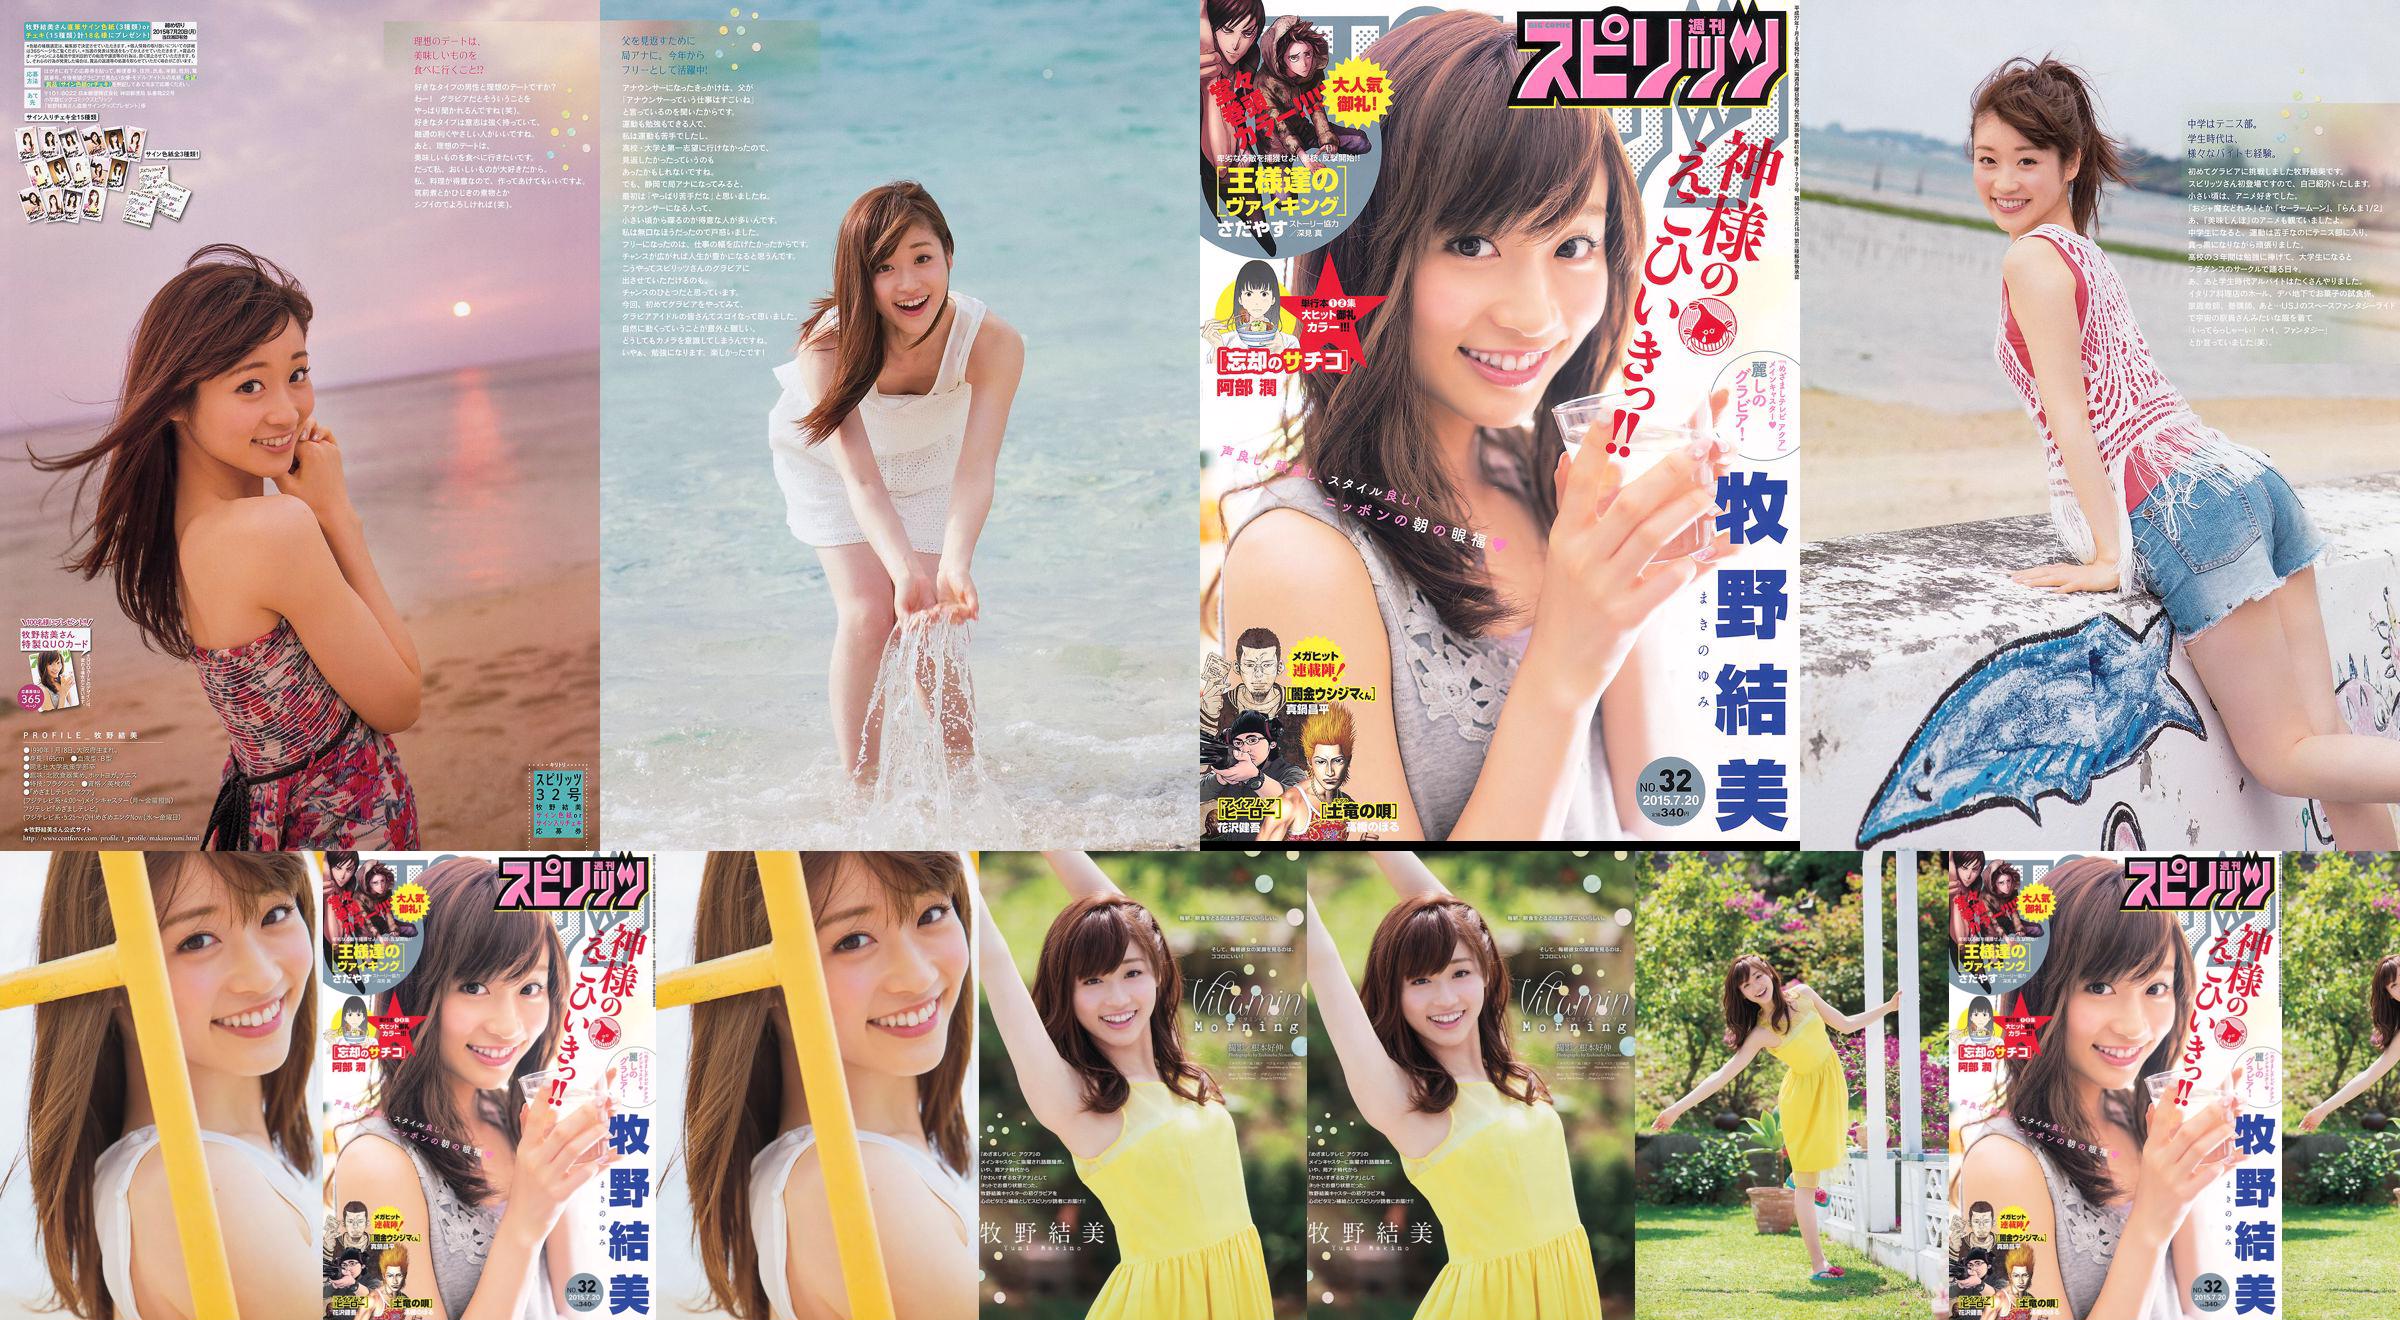 [Weekly Big Comic Spirits] Yumi Makino 2015 No.32 Photo Magazine No.213e35 Page 2